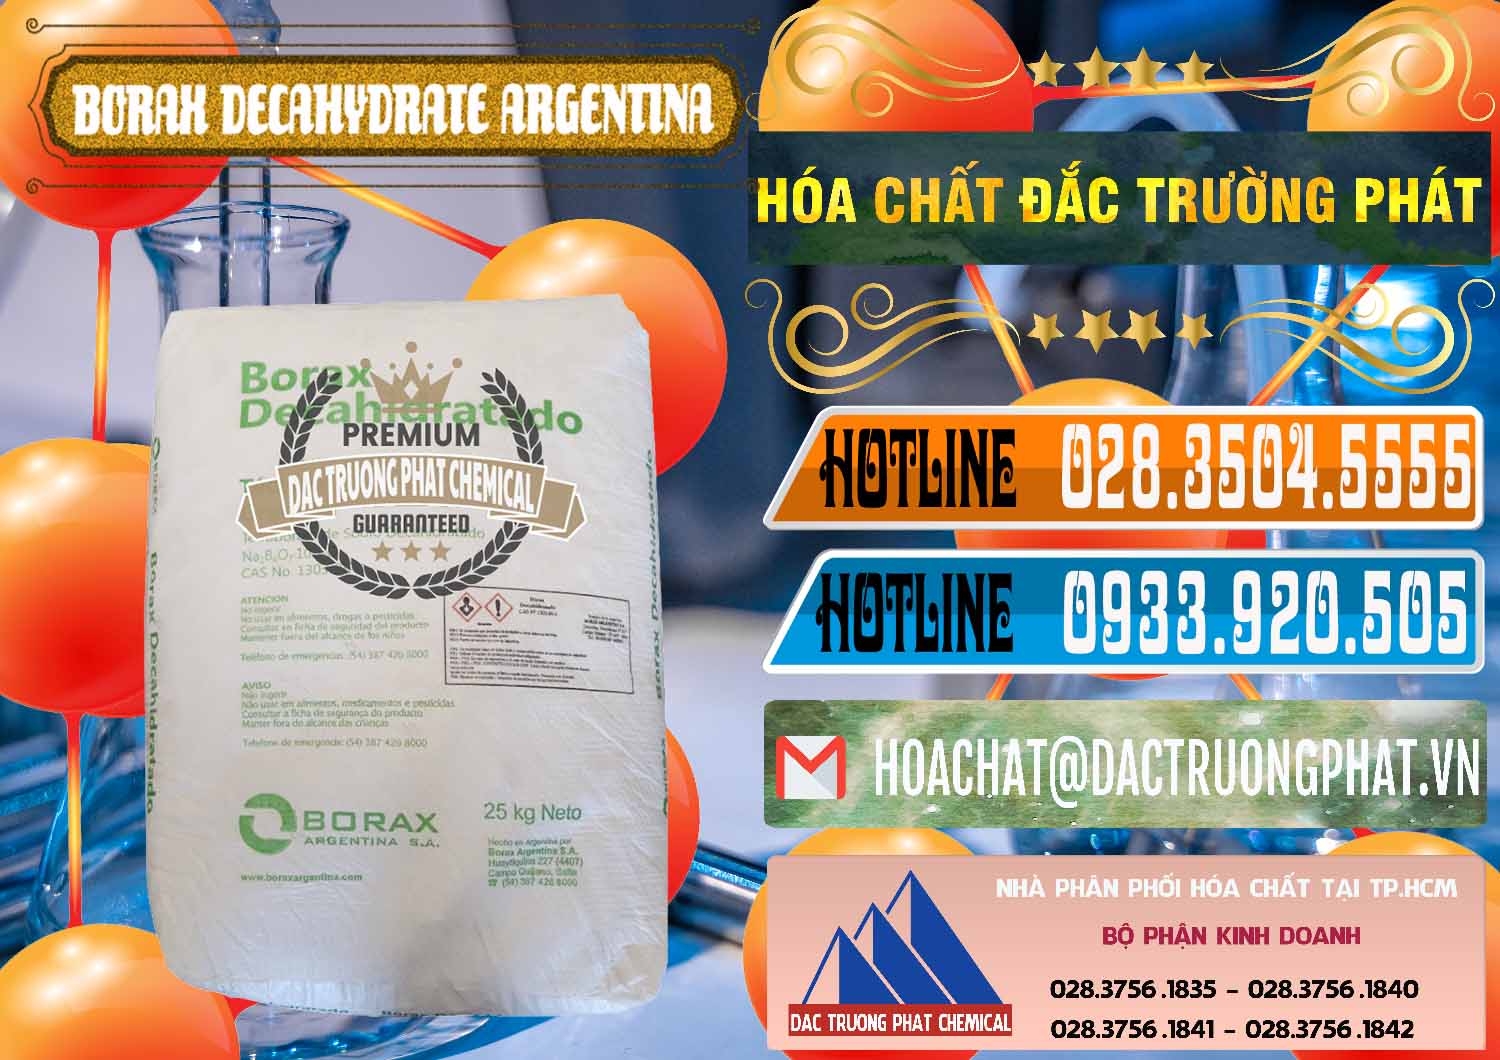 Đơn vị chuyên bán _ cung cấp Borax Decahydrate Argentina - 0446 - Nhà cung cấp _ phân phối hóa chất tại TP.HCM - stmp.net